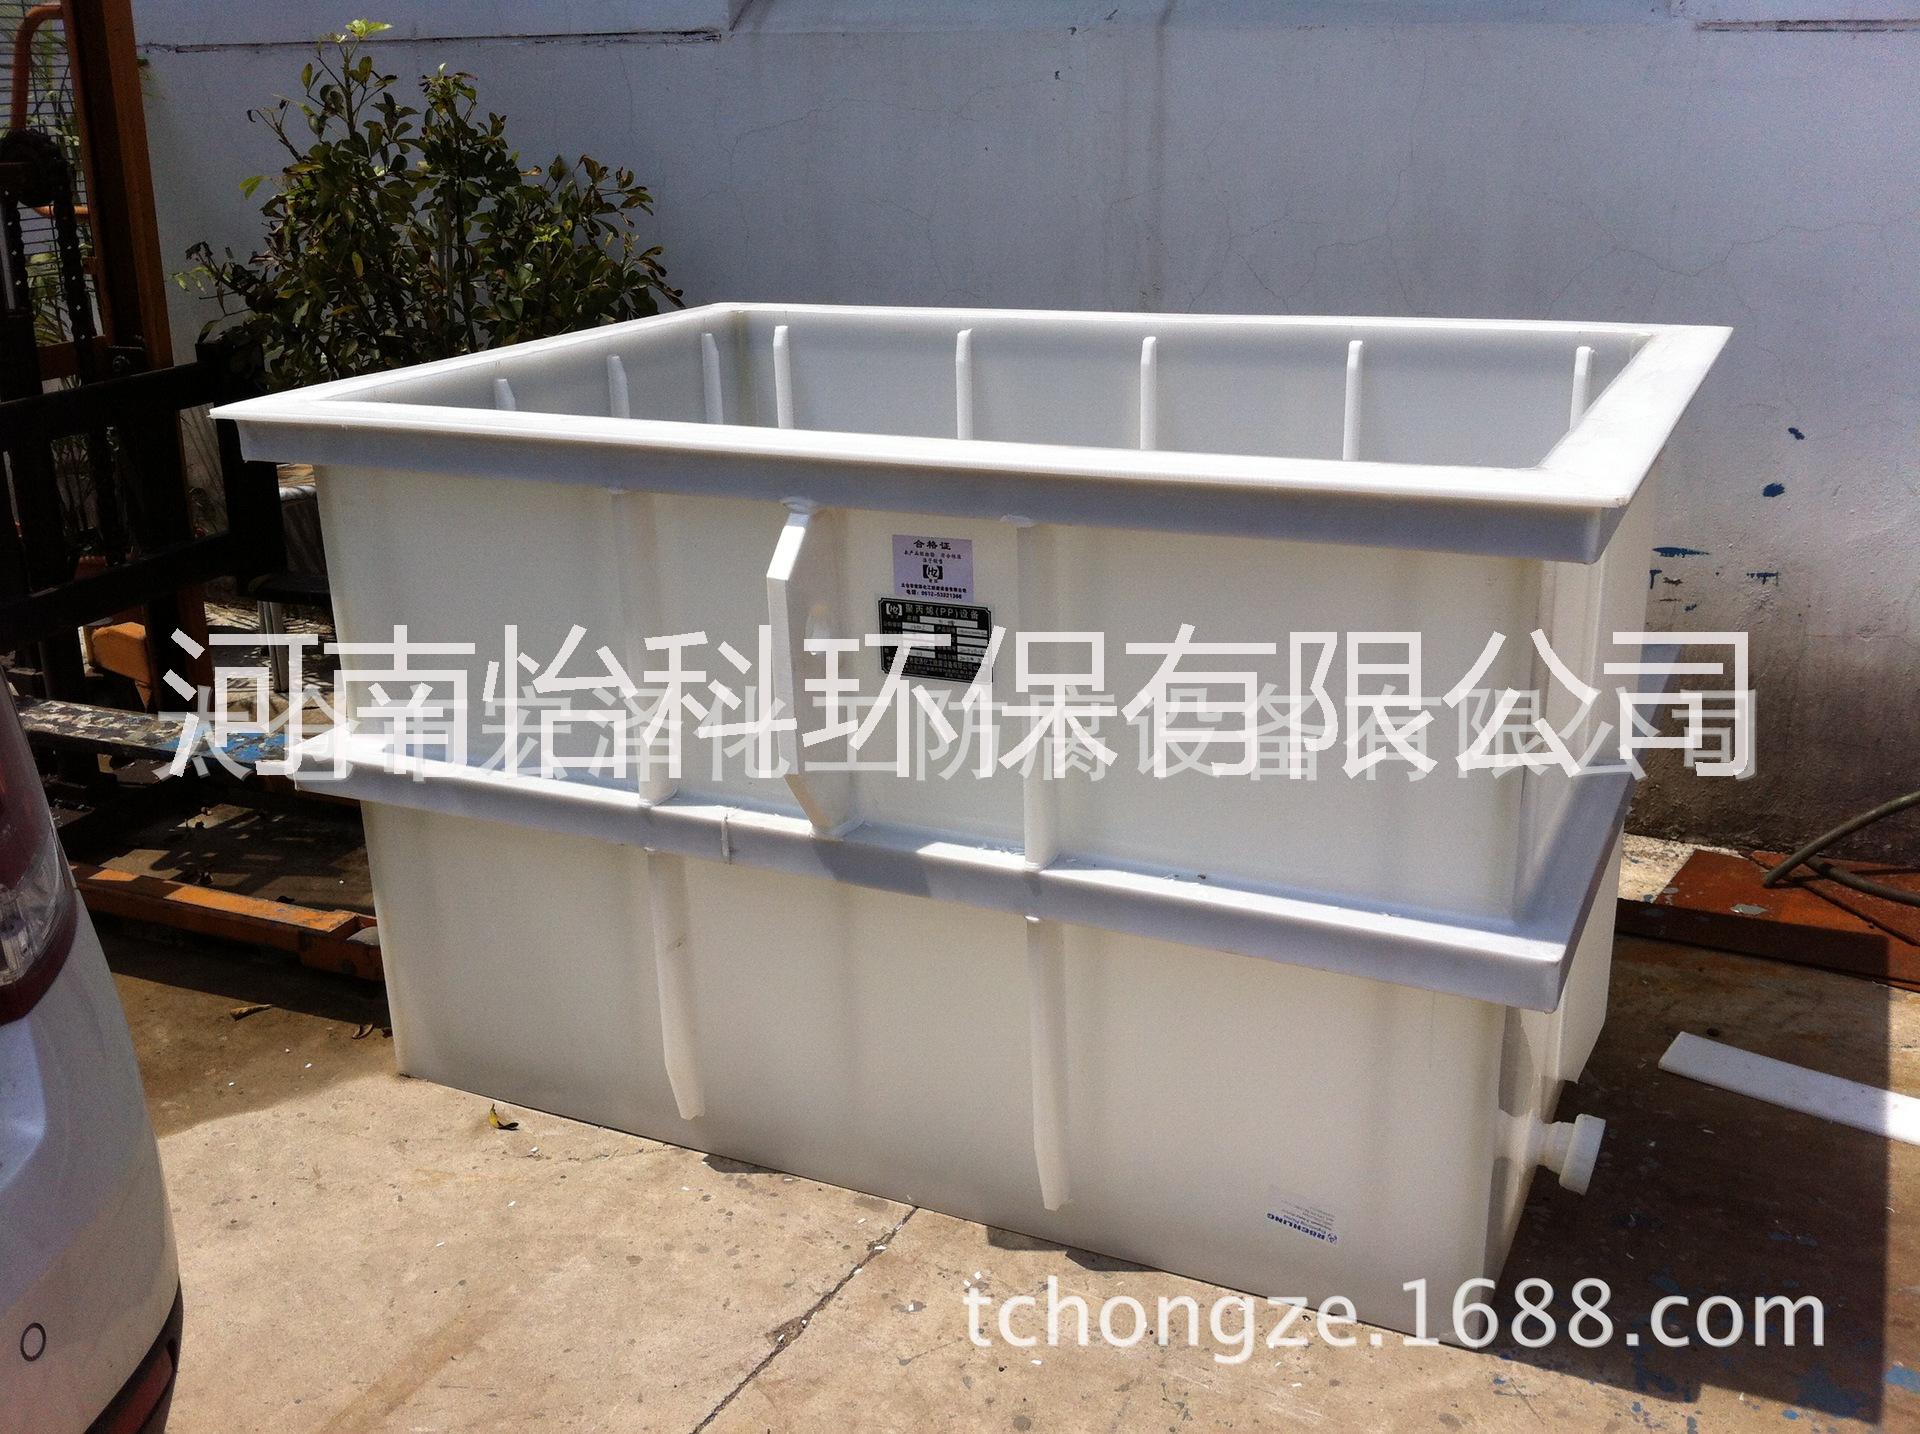 河南新乡塑料板厂家直销塑料焊接酸洗磷化槽电解槽氧化池/PP板材焊接塑料焊条